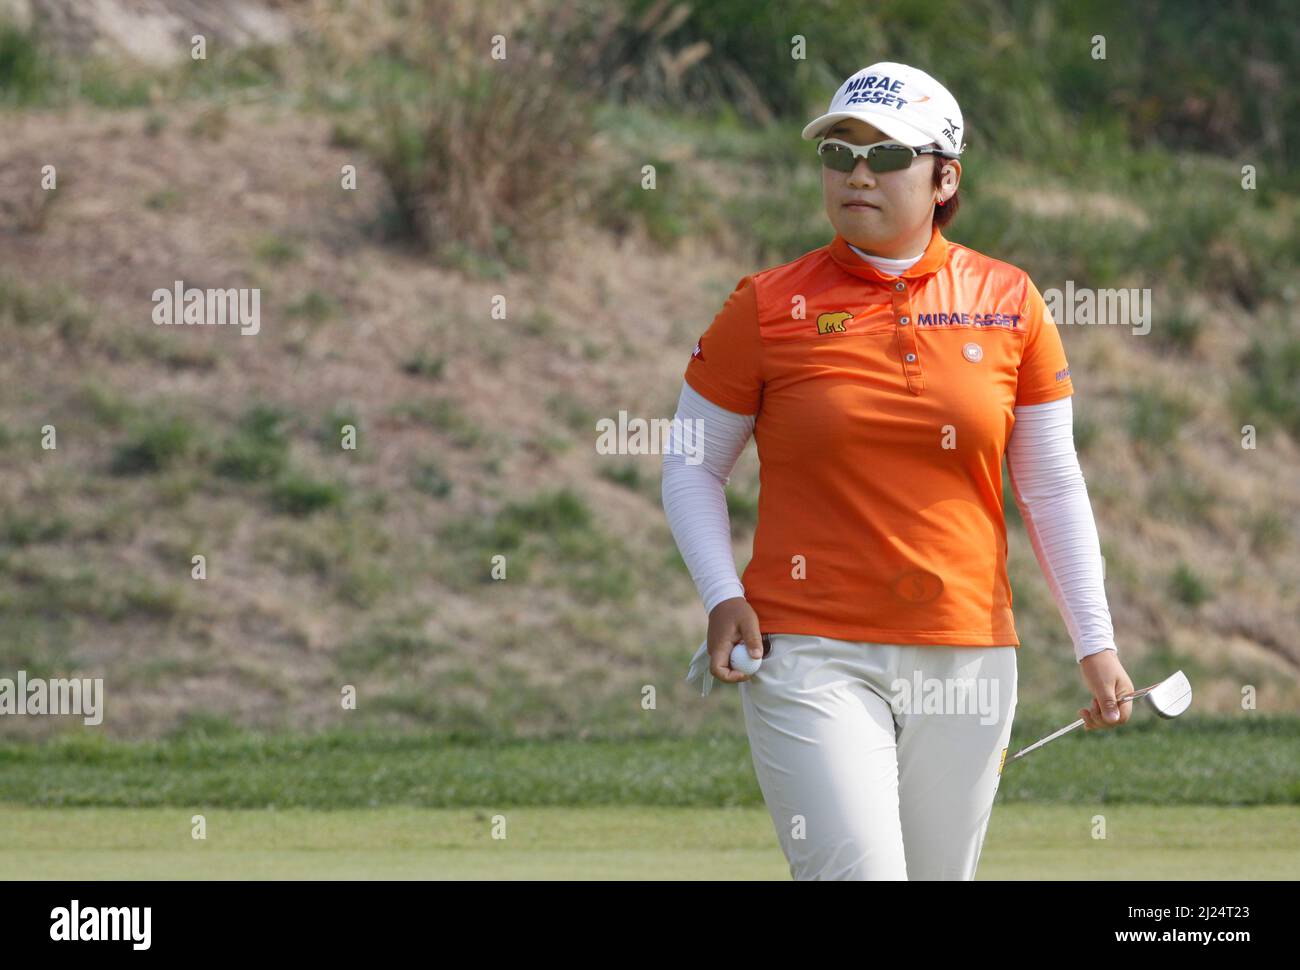 8 oct 2011-Incheon, Corée du Sud-SHIN, Jiyai de Corée du Sud, joue sur le 2th trous pendant le championnat LPGA par Hana Bank au club de golf SKY72 à Incheon le 8 oct 2011, Corée du Sud. Banque D'Images